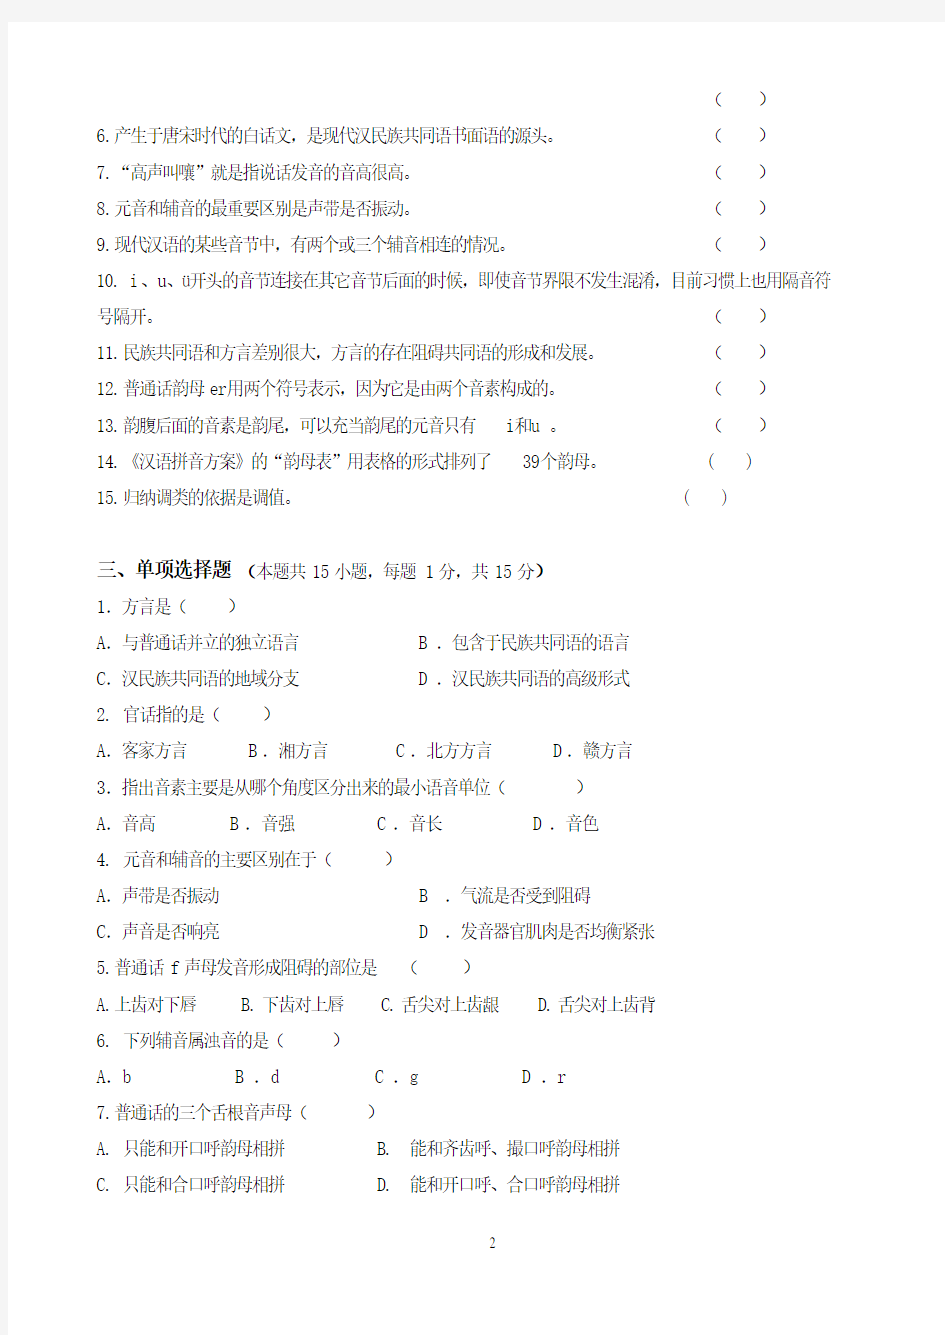 现代汉语第1阶段测试题